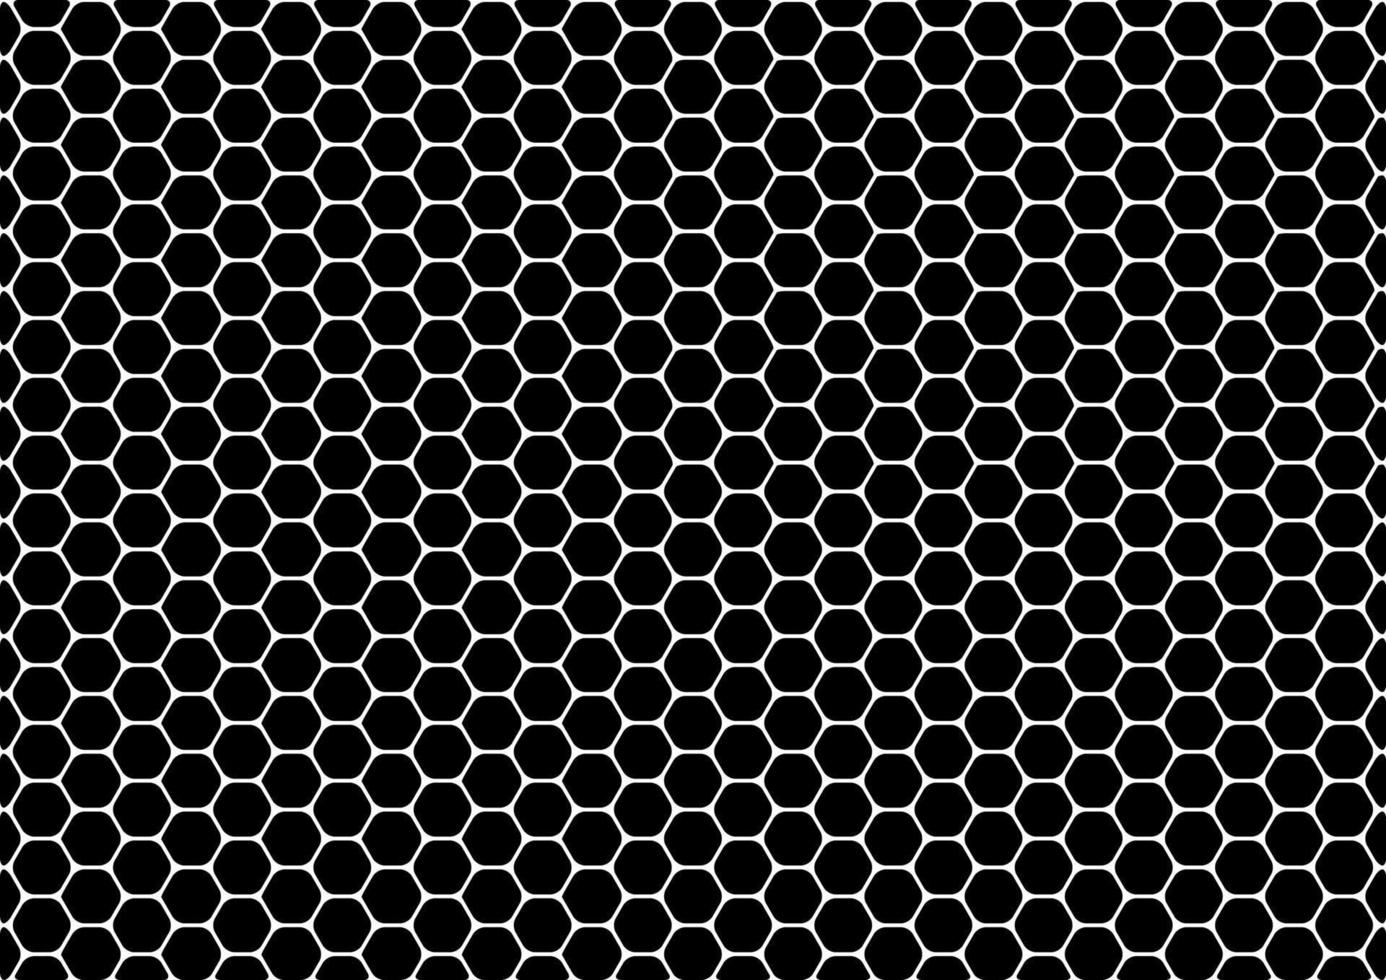 Hexagonal pattern. Snake skin and bee nest vector